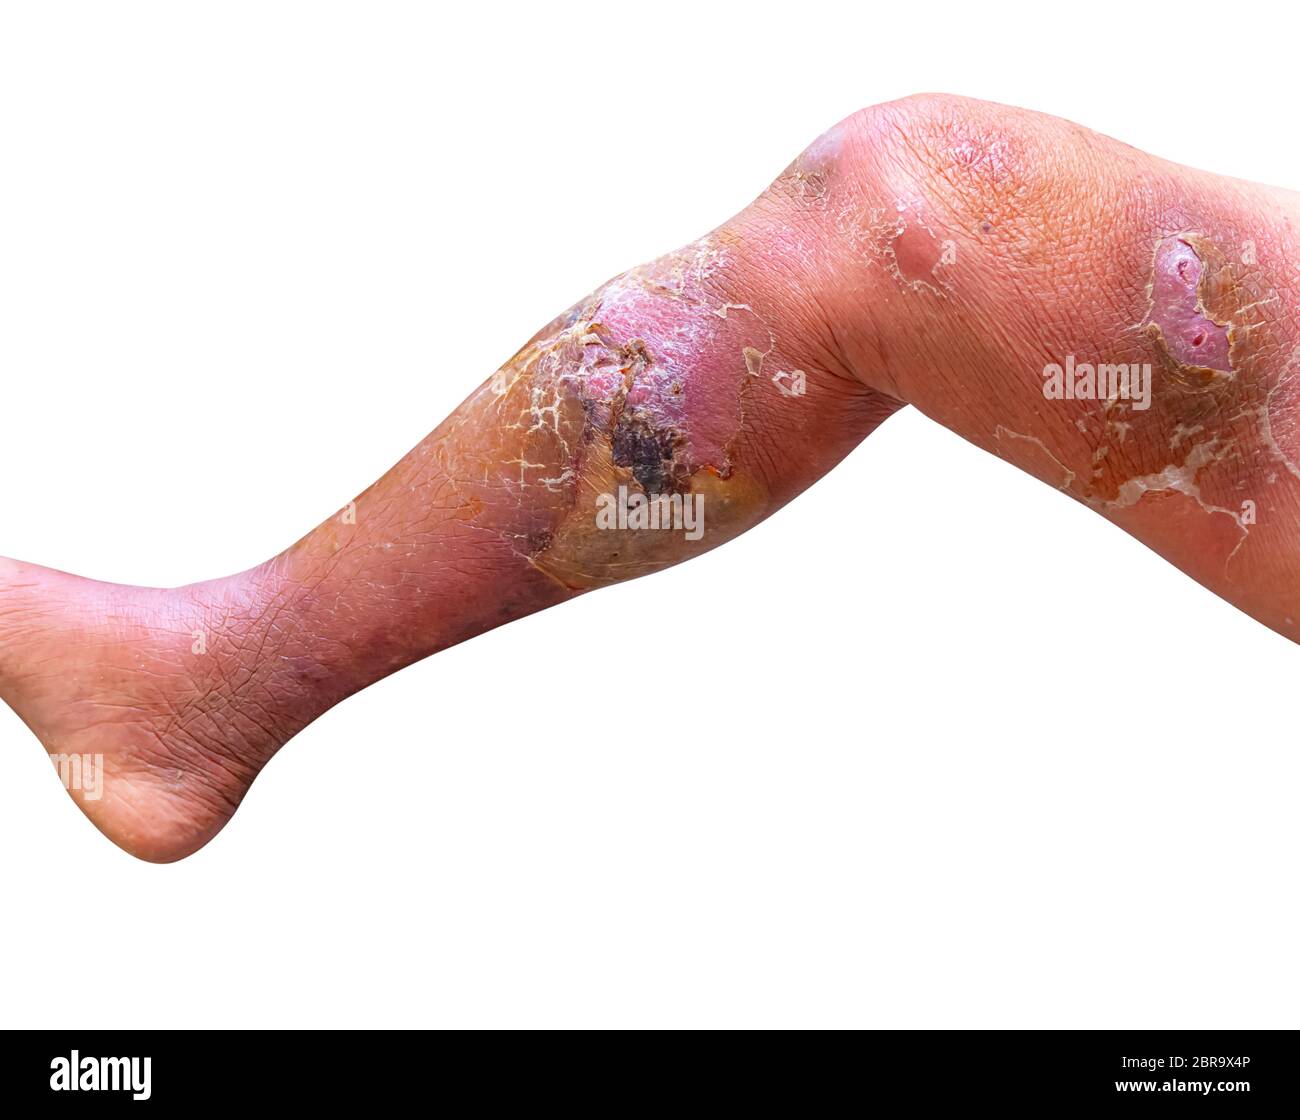 Erysipeln bakterielle Infektion unter der Haut Bein gealterten Menschen auf weißem Hintergrund Stockfoto